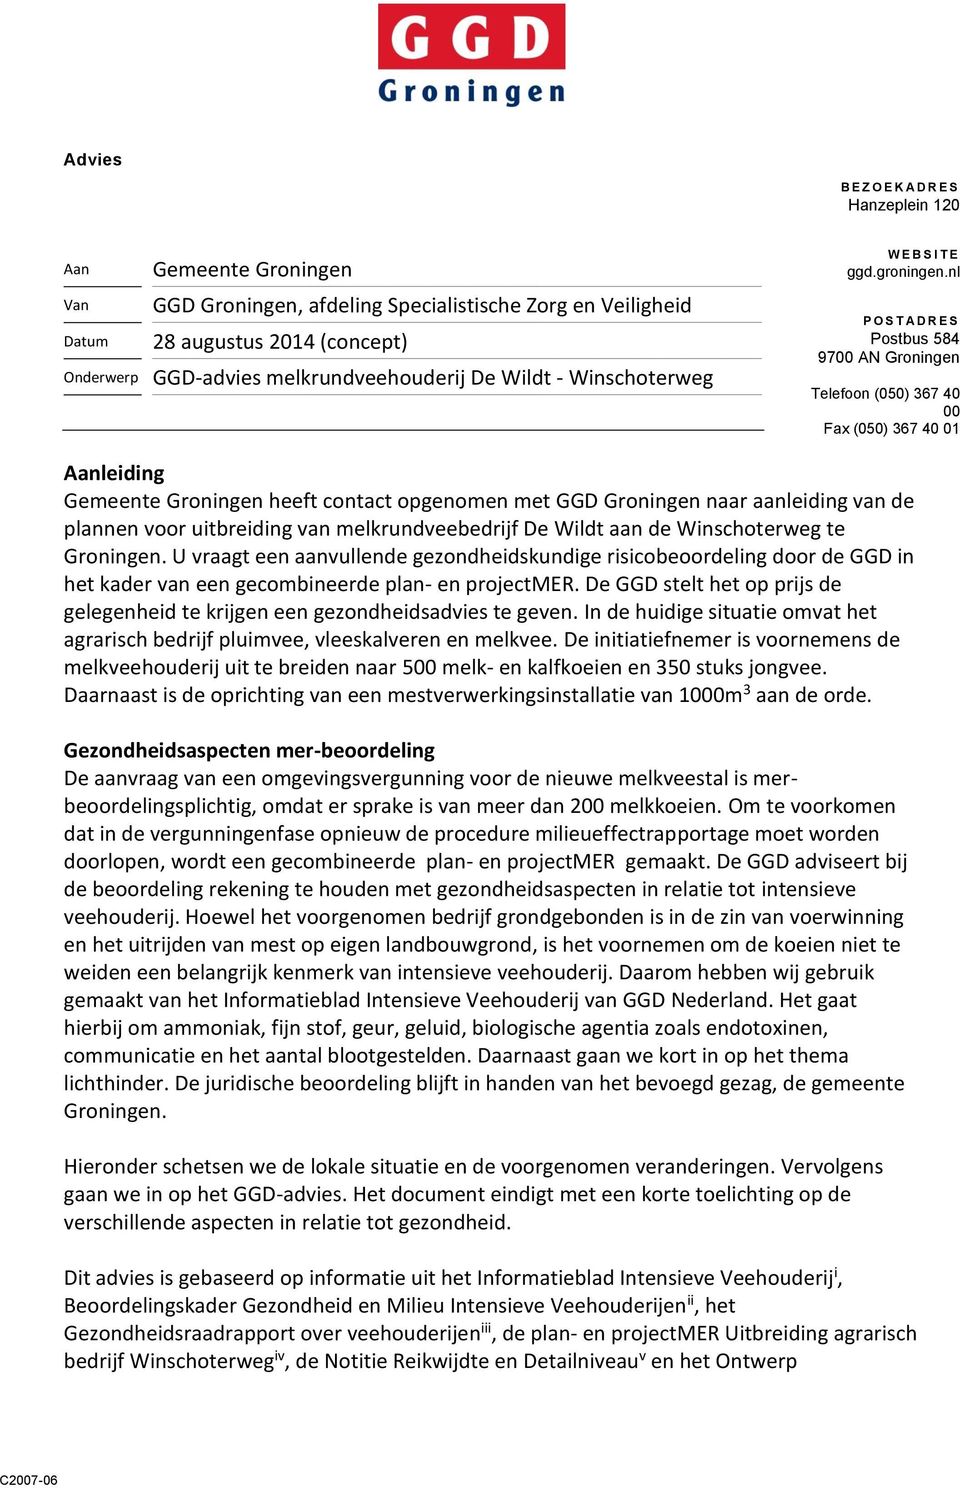 nl P O S T A D R E S Postbus 584 9700 AN Groningen Telefoon (050) 367 40 00 Fax (050) 367 40 01 Aanleiding Gemeente Groningen heeft contact opgenomen met GGD Groningen naar aanleiding van de plannen